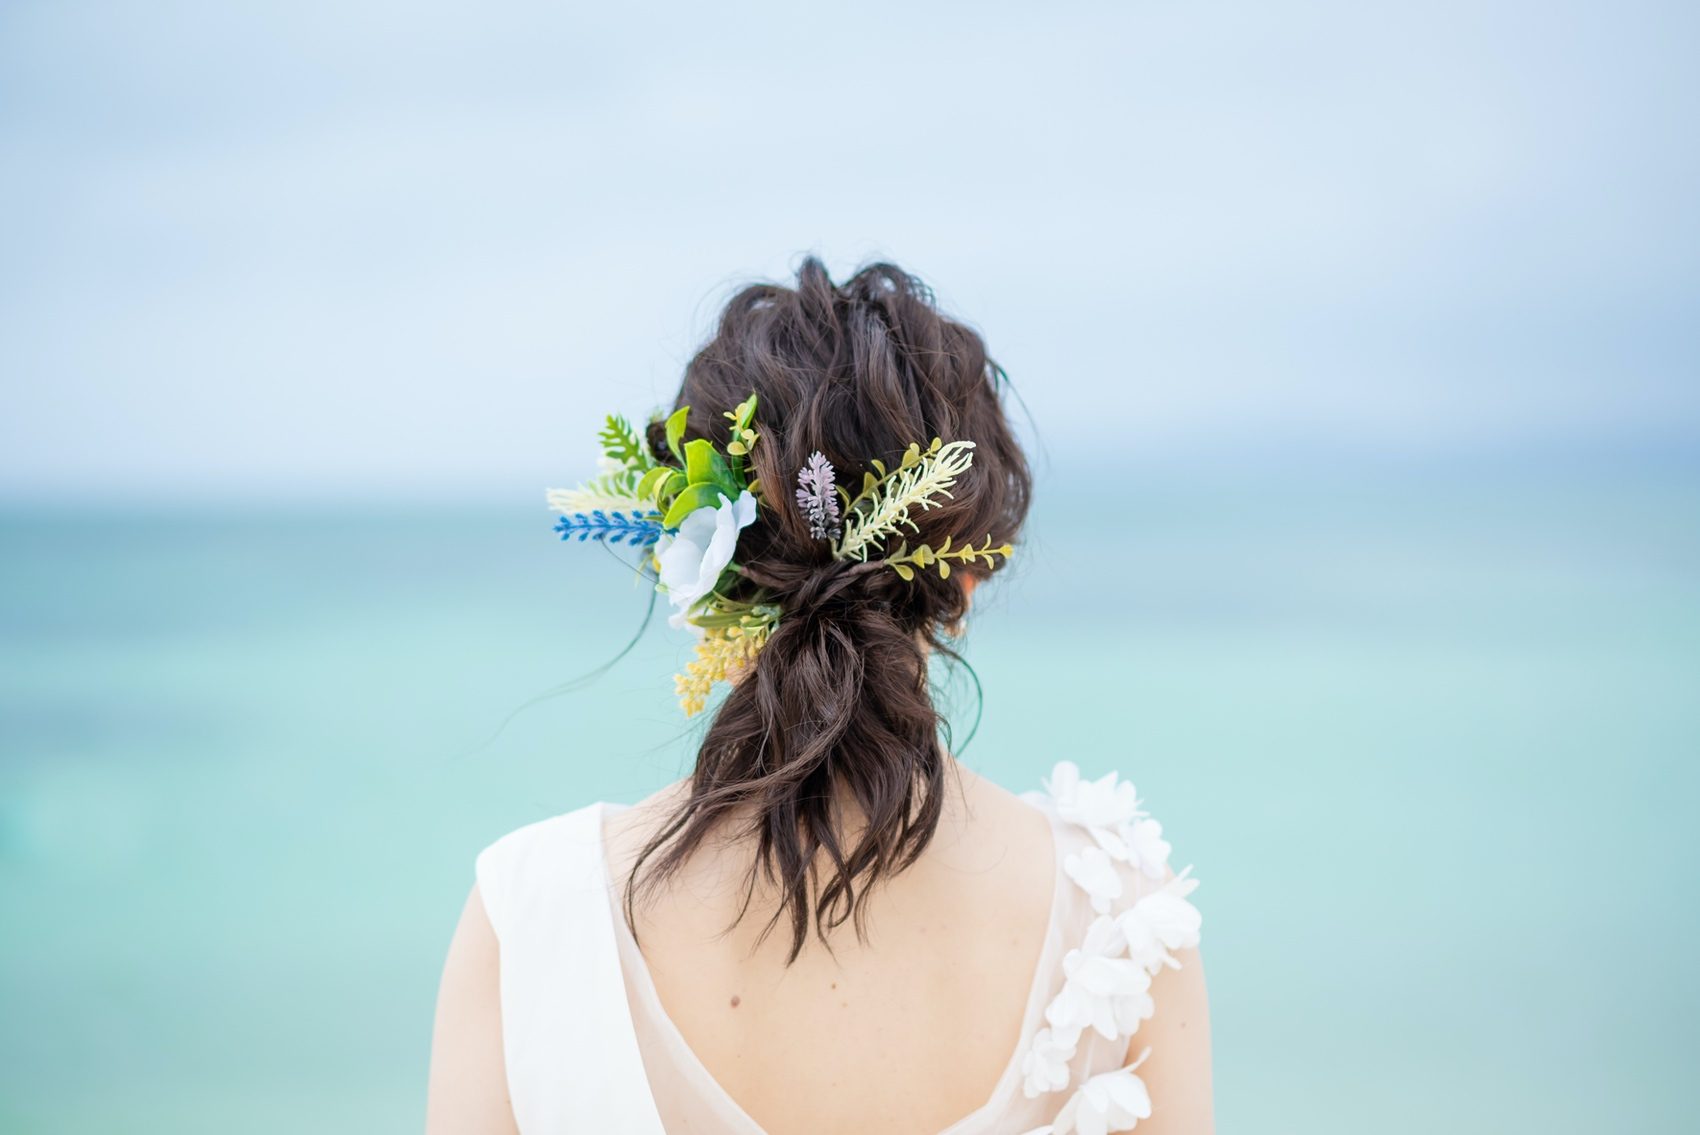 19年10月版 沖縄で前撮り 花嫁さんのヘアスタイル１６例まとめ Bless Ishigaki